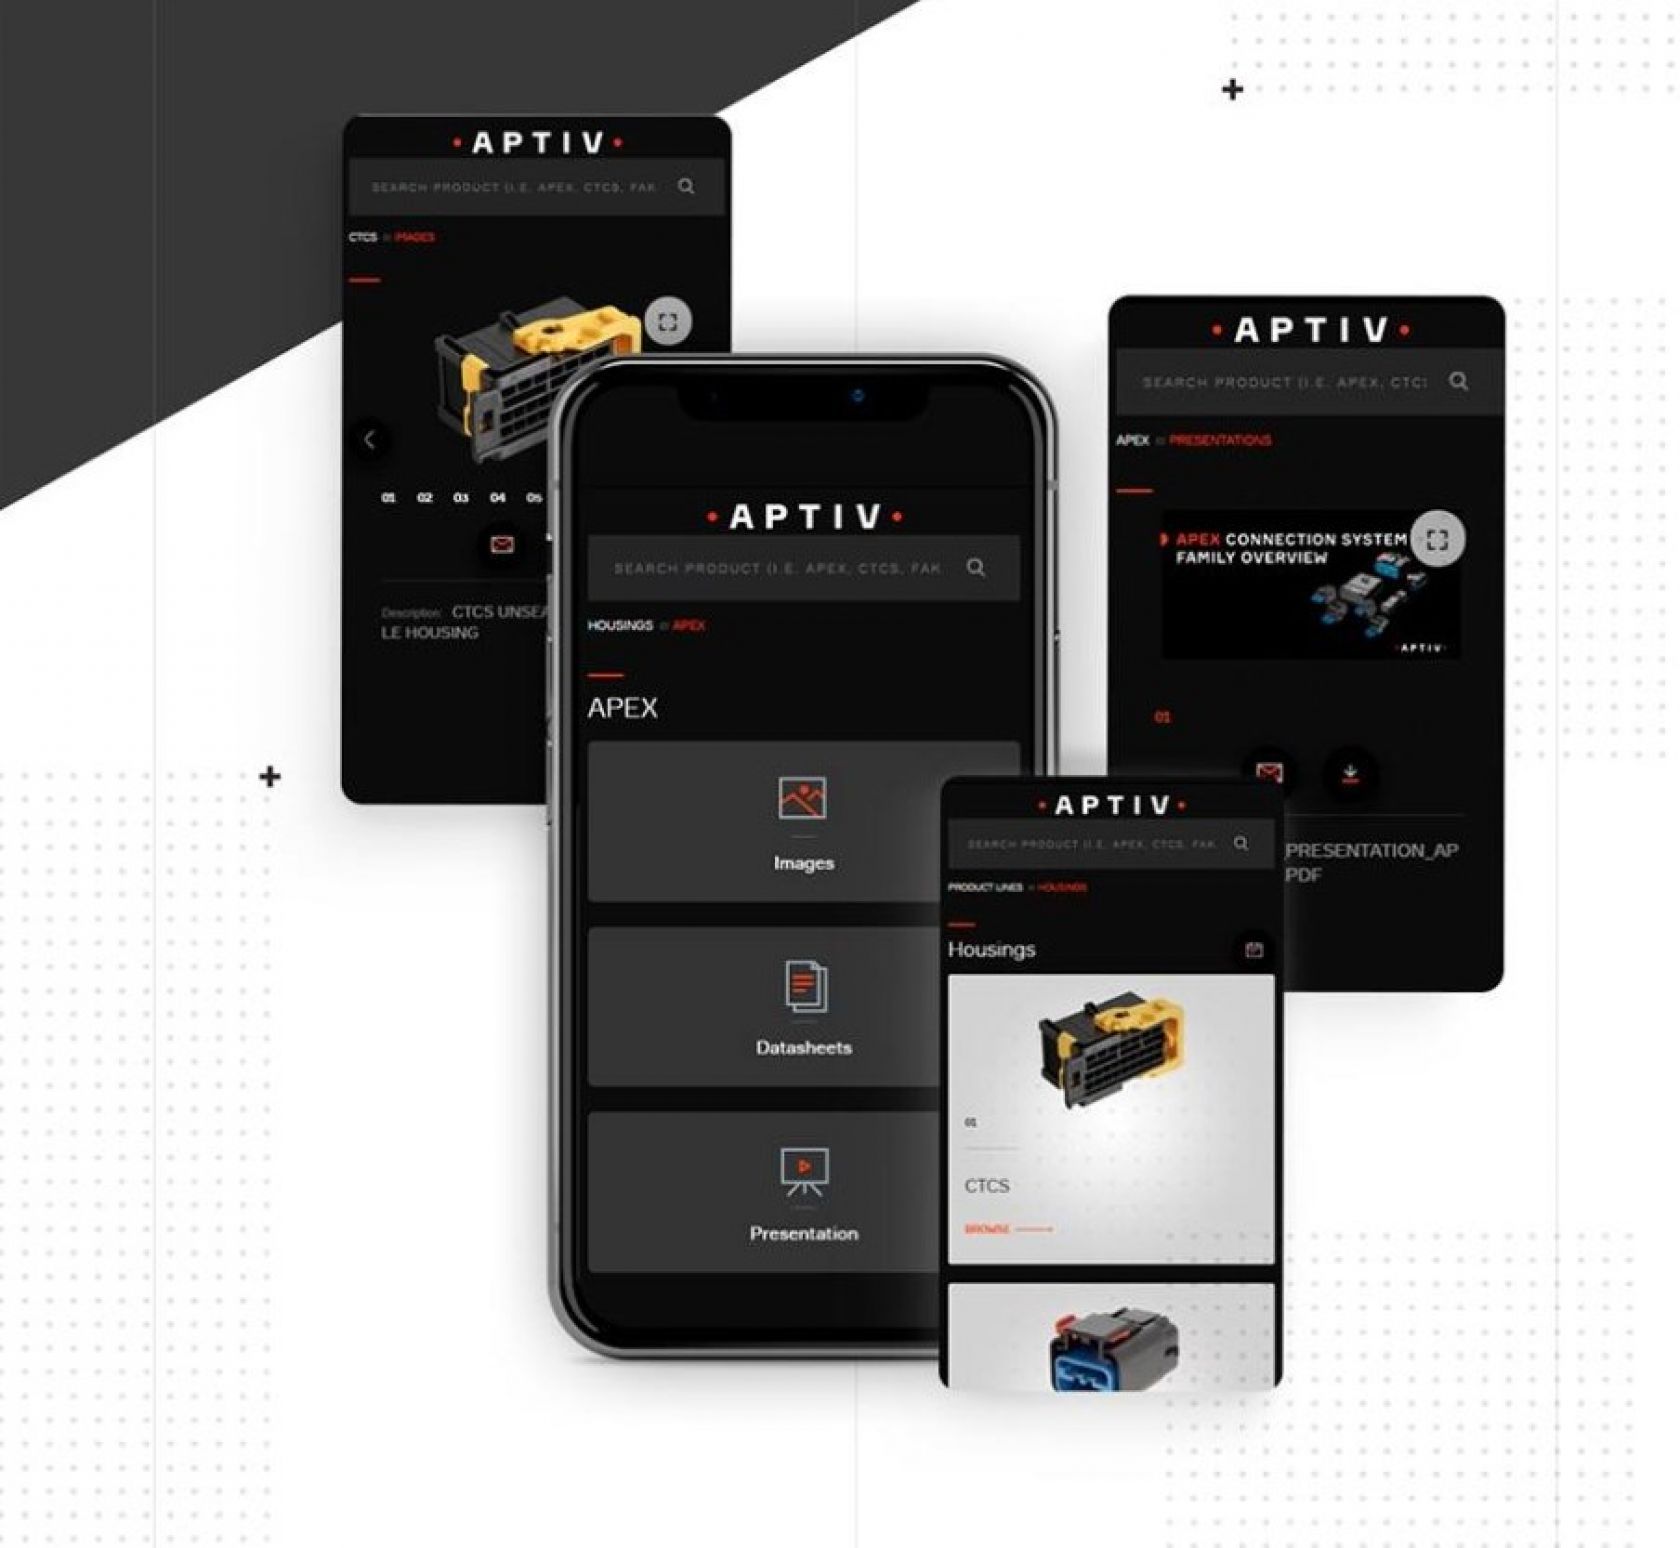 мобильное приложение для компании aptiv